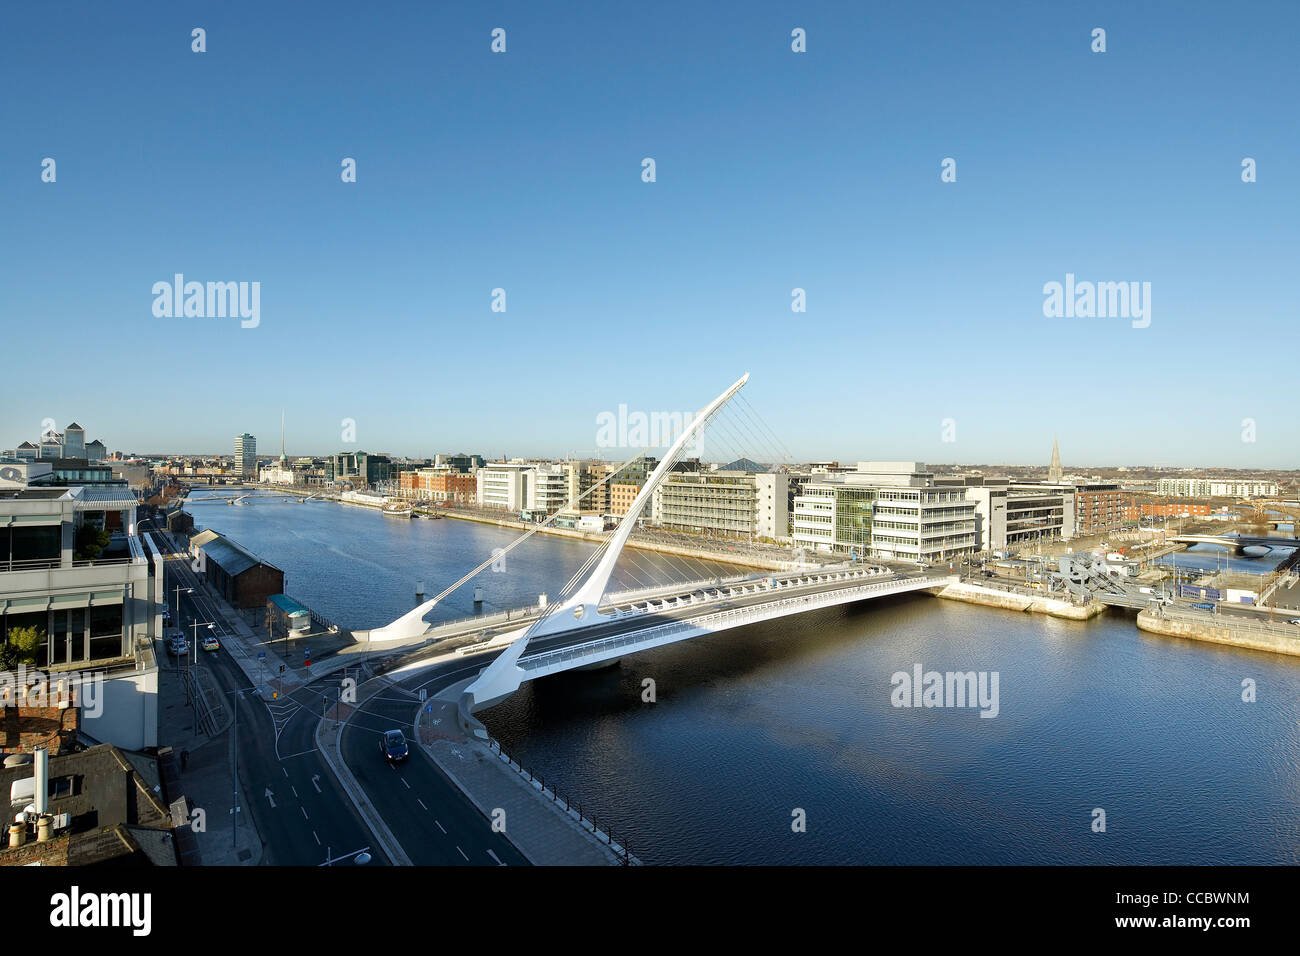 samuel beckett bridge, santiago calatrava, dublin, ireland, 2009 Stock Photo